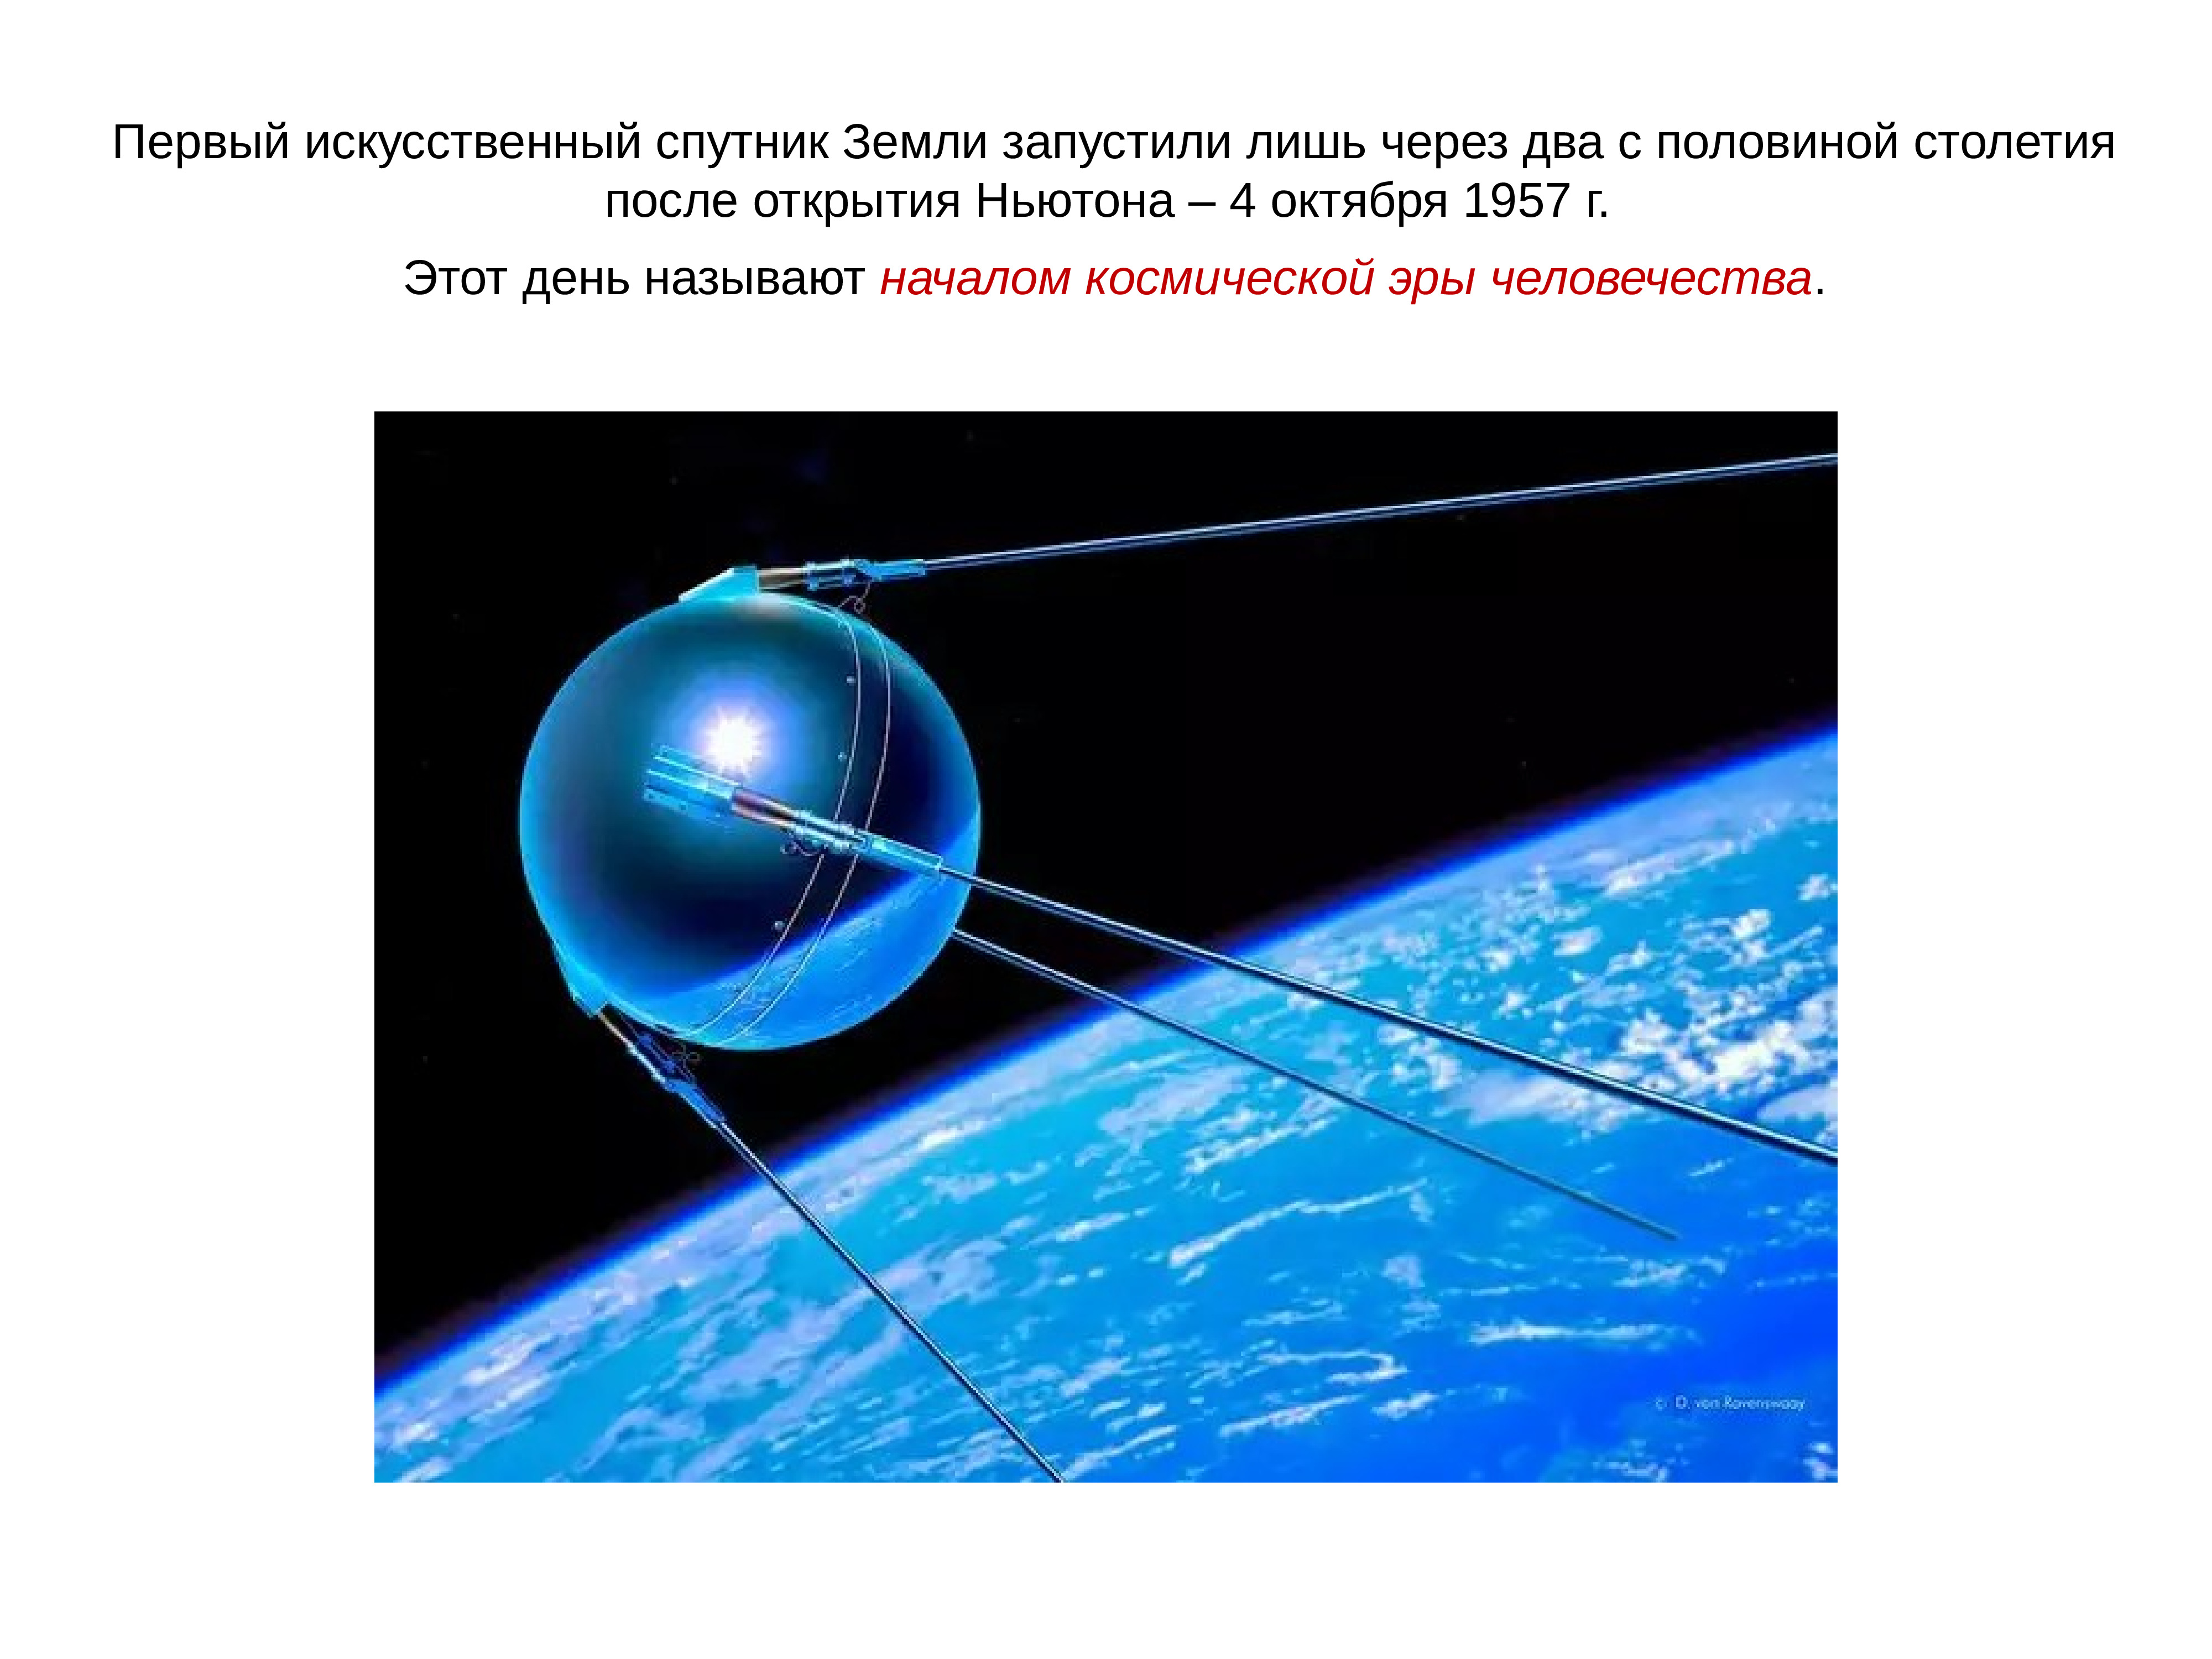 Какое имя носил первый искусственный спутник земли. 4 Октября 1957 года запущен первый искусственный Спутник земли. 4 Октября 1957-первый ИСЗ "Спутник" (СССР).. Искусственный Спутник 1957. Первый Спутник 1957.